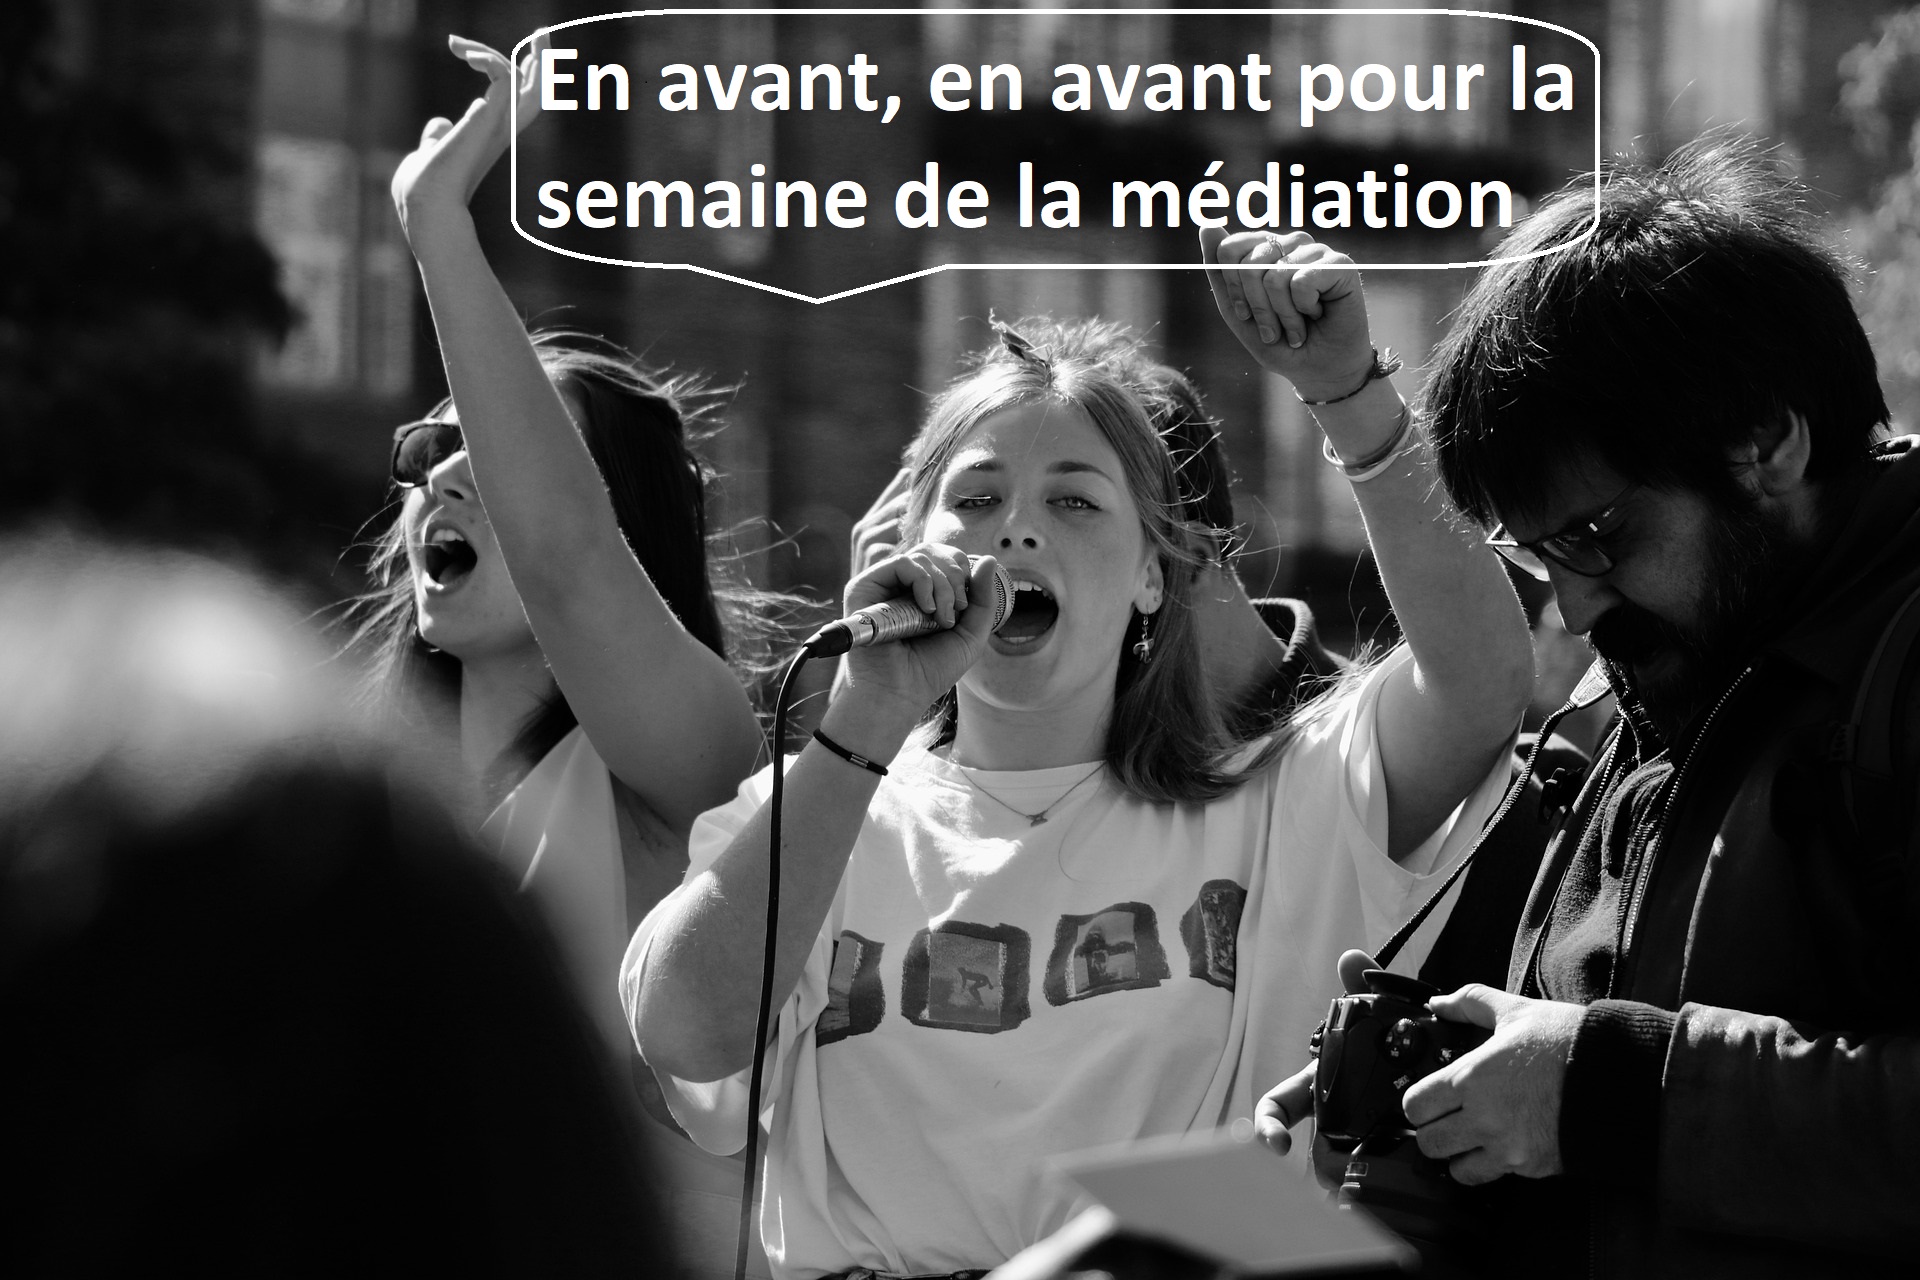 You are currently viewing La semaine de la médiation, une manifestation pour quoi faire ?